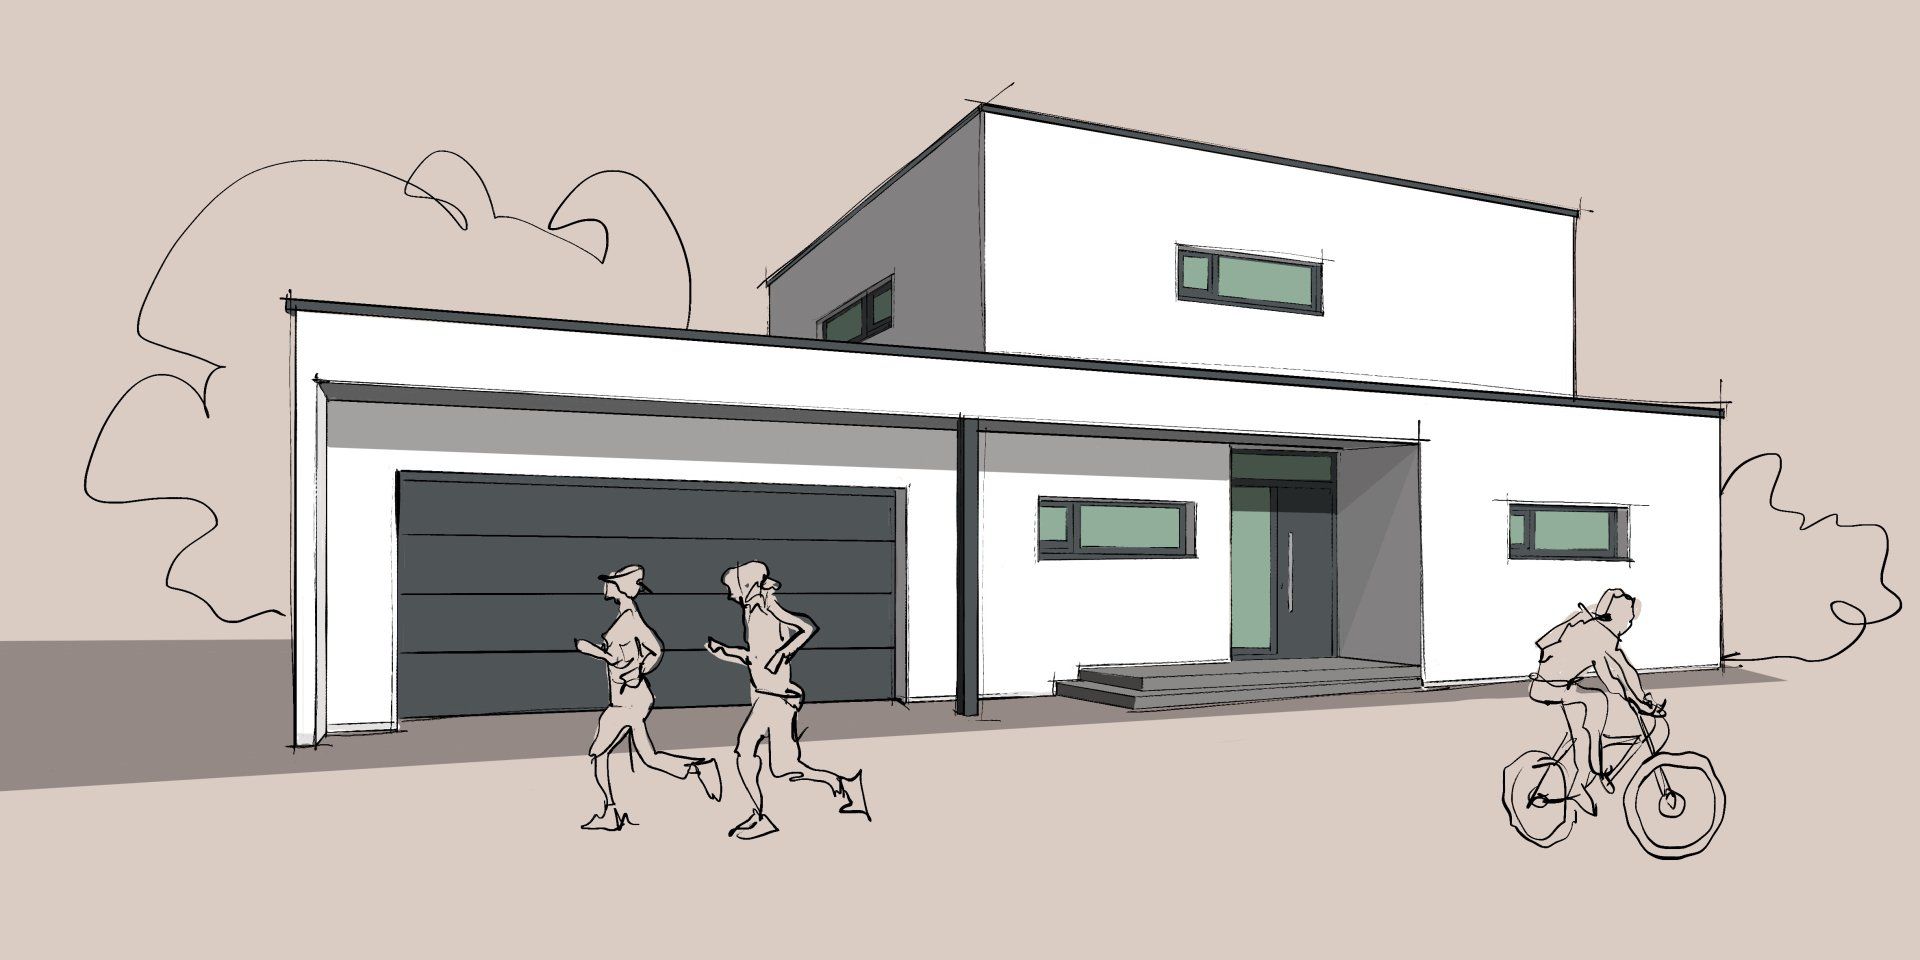 Grübbel Architektur. Atelier. - Beispiel eines modernen Einfamilienhauses mit Flachdach - Ansicht 1